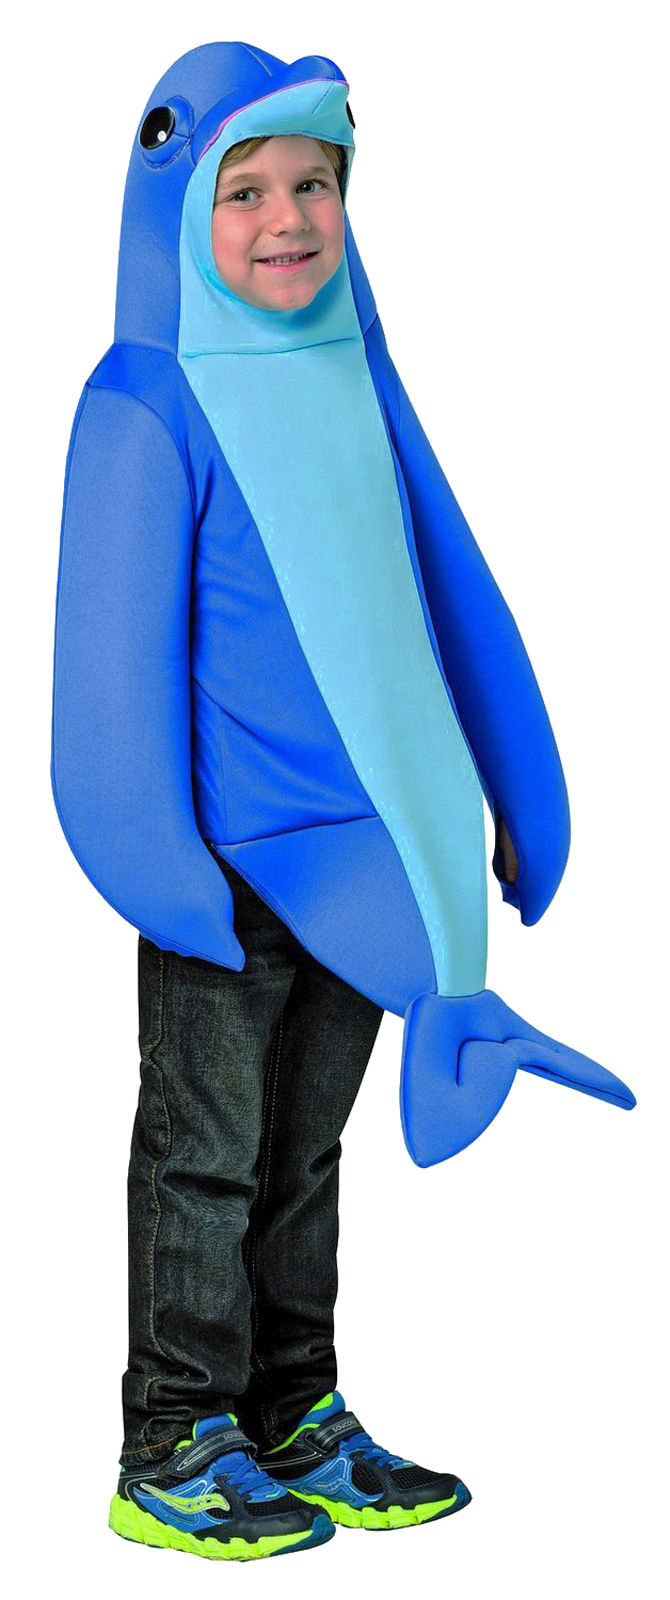 Deluxe Blue Bottlenose Dolphin Costume Toddler Boys Girls 4-6 3-4 | eBay